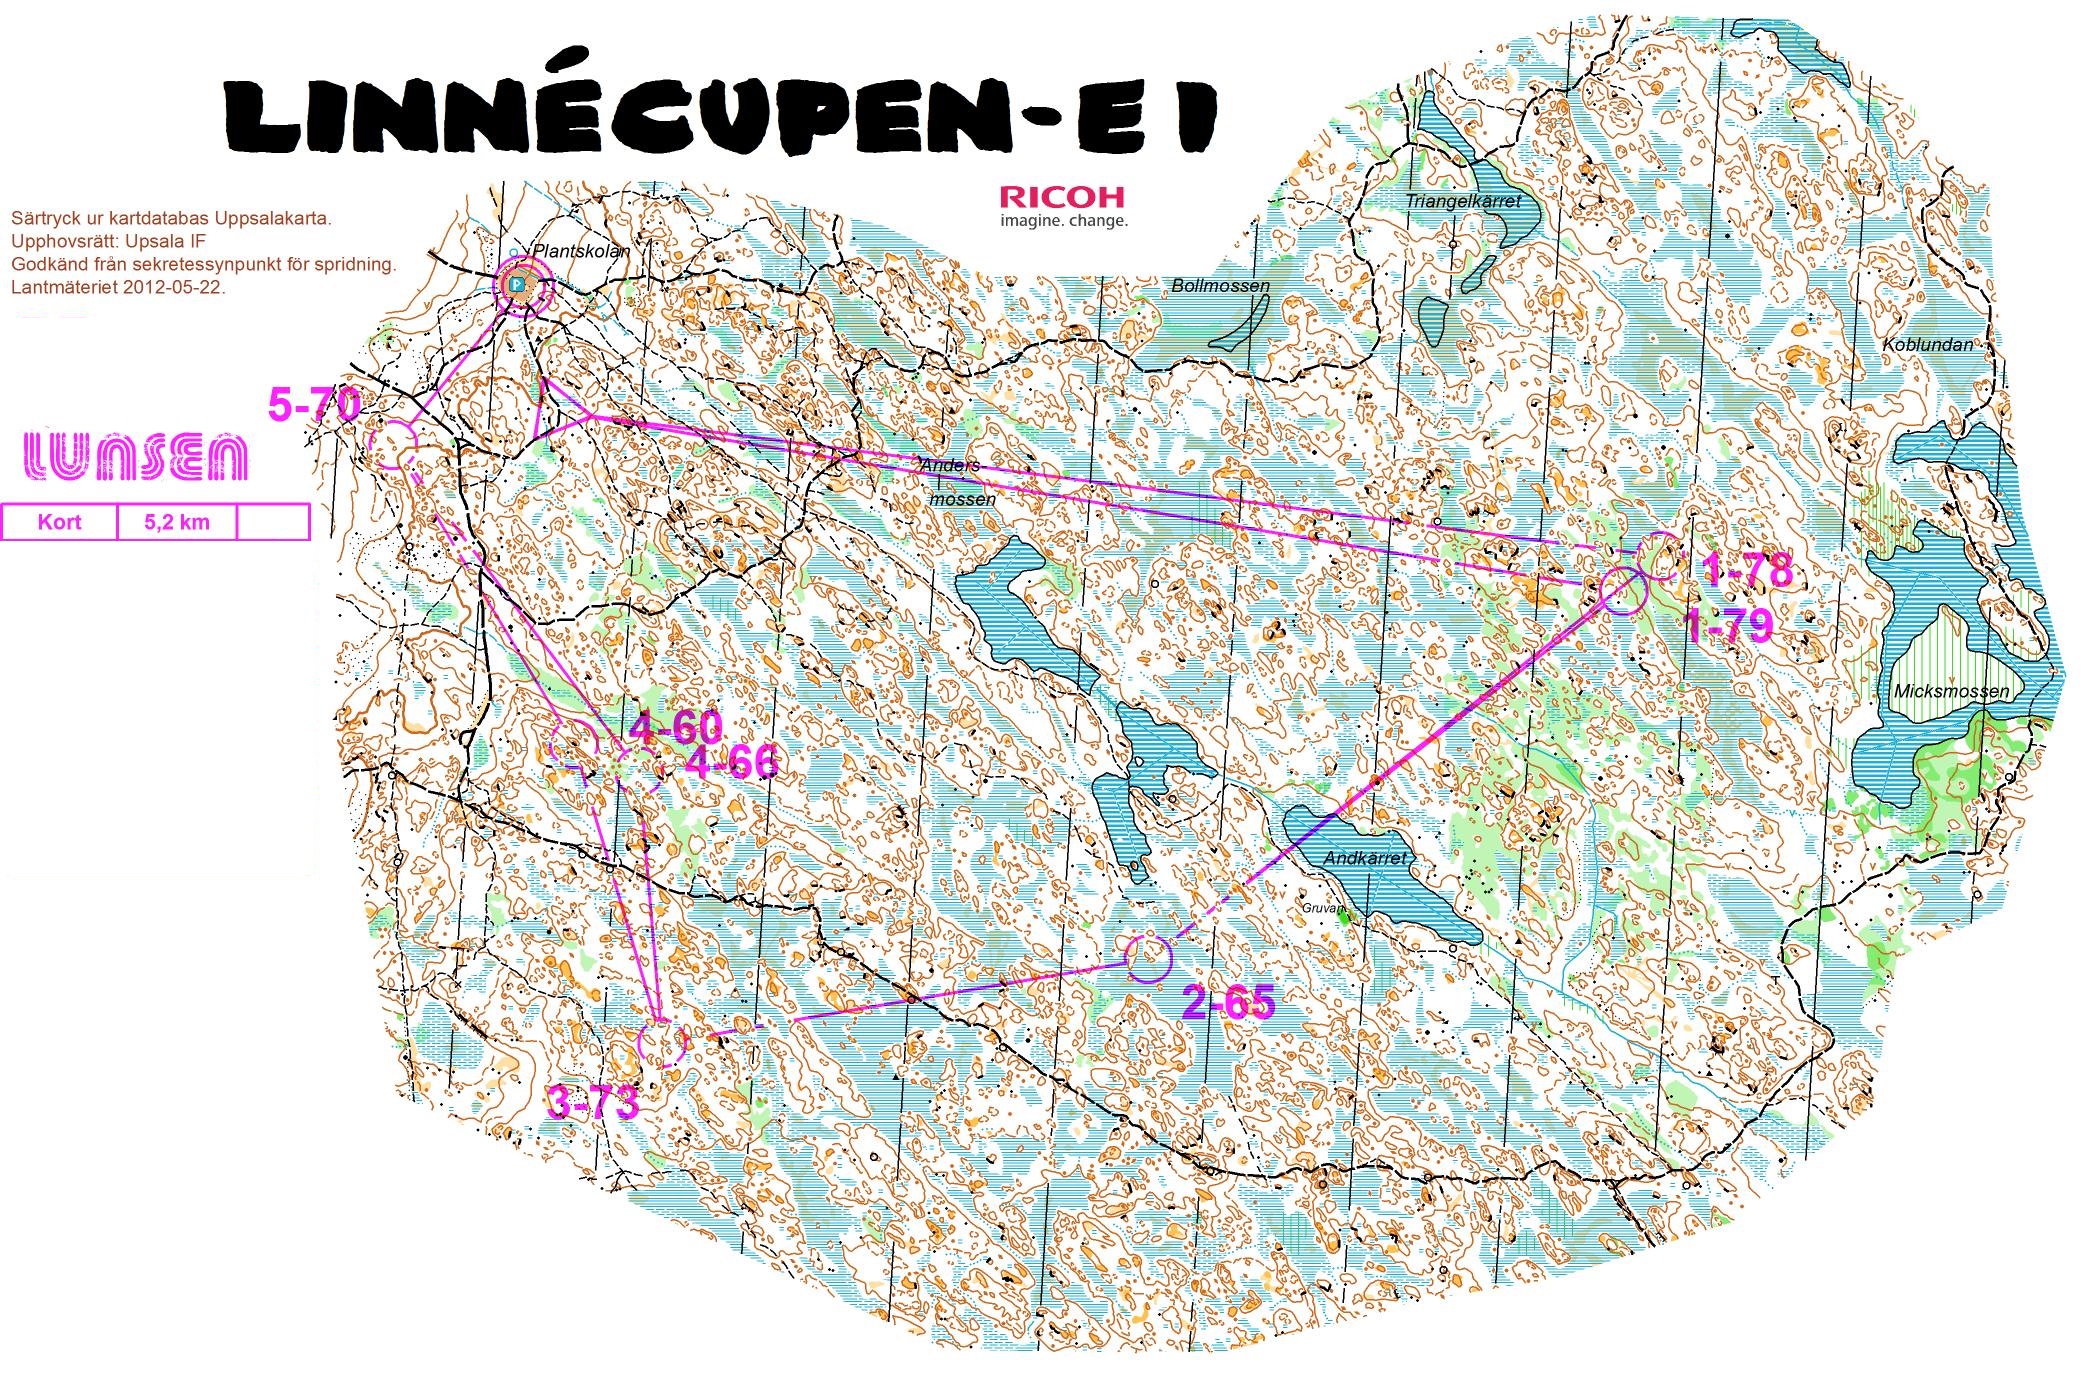 Linnécupen E1 - Kort (10.01.2015)